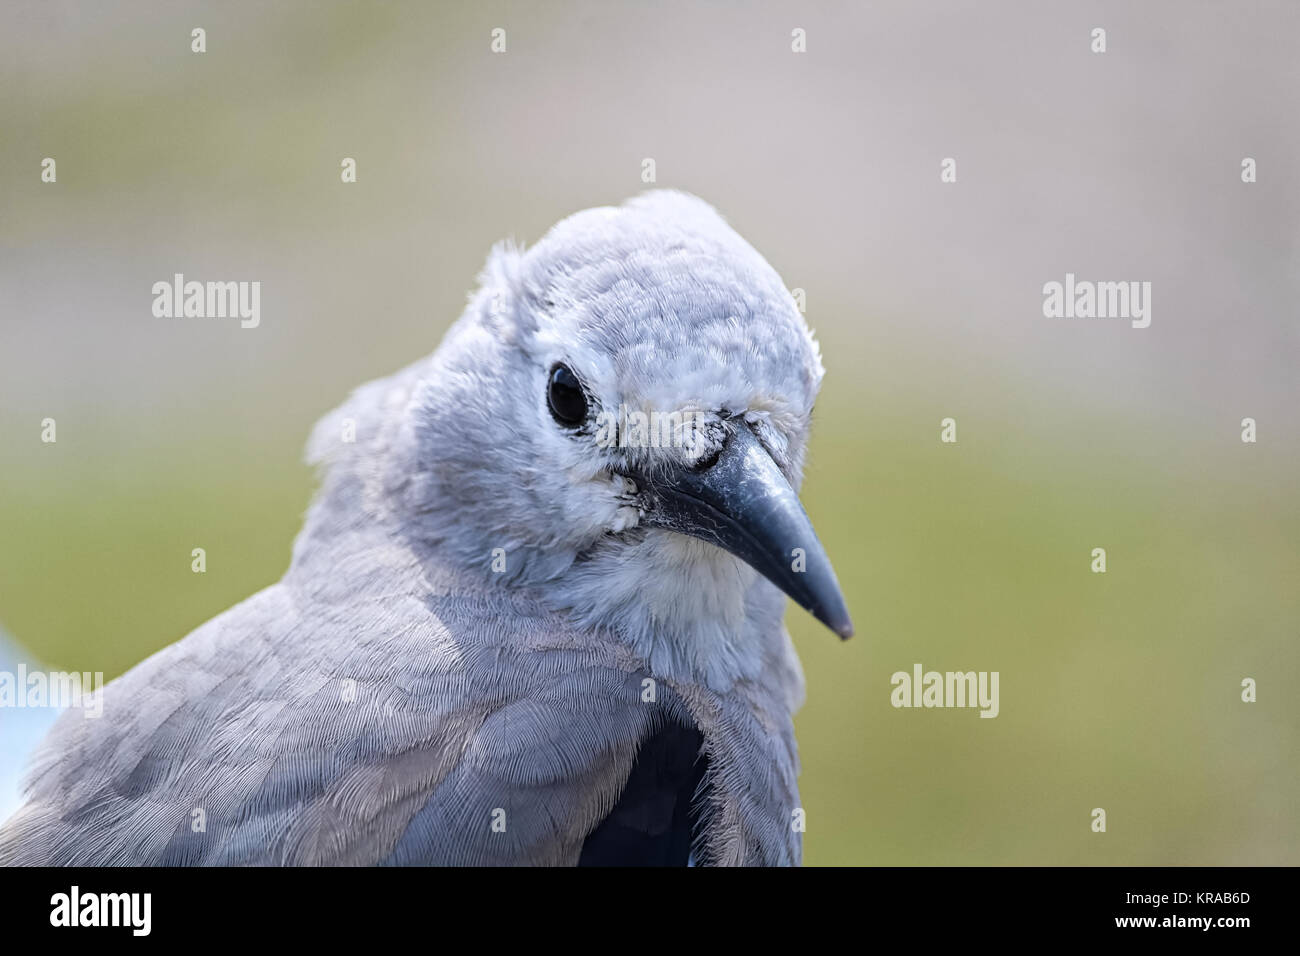 Closeup of a Clarks Nutcracker bird head. Stock Photo